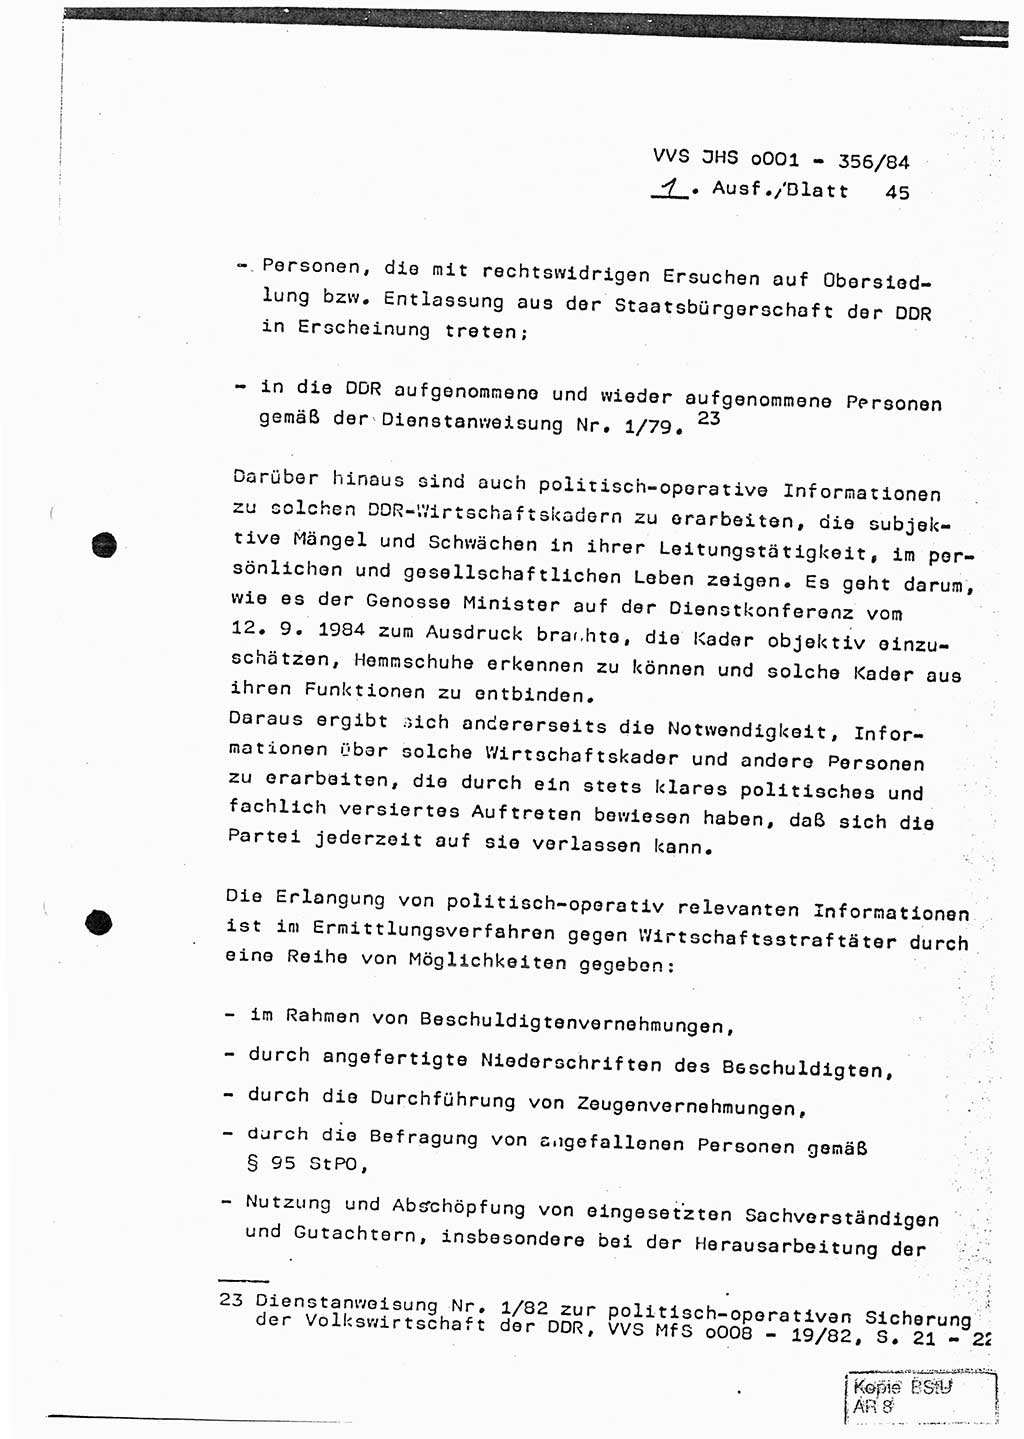 Diplomarbeit, Major Lutz Rahaus (HA Ⅸ/3), Ministerium für Staatssicherheit (MfS) [Deutsche Demokratische Republik (DDR)], Juristische Hochschule (JHS), Vertrauliche Verschlußsache (VVS) o001-356/84, Potsdam 1984, Seite 45 (Dipl.-Arb. MfS DDR JHS VVS o001-356/84 1984, S. 45)